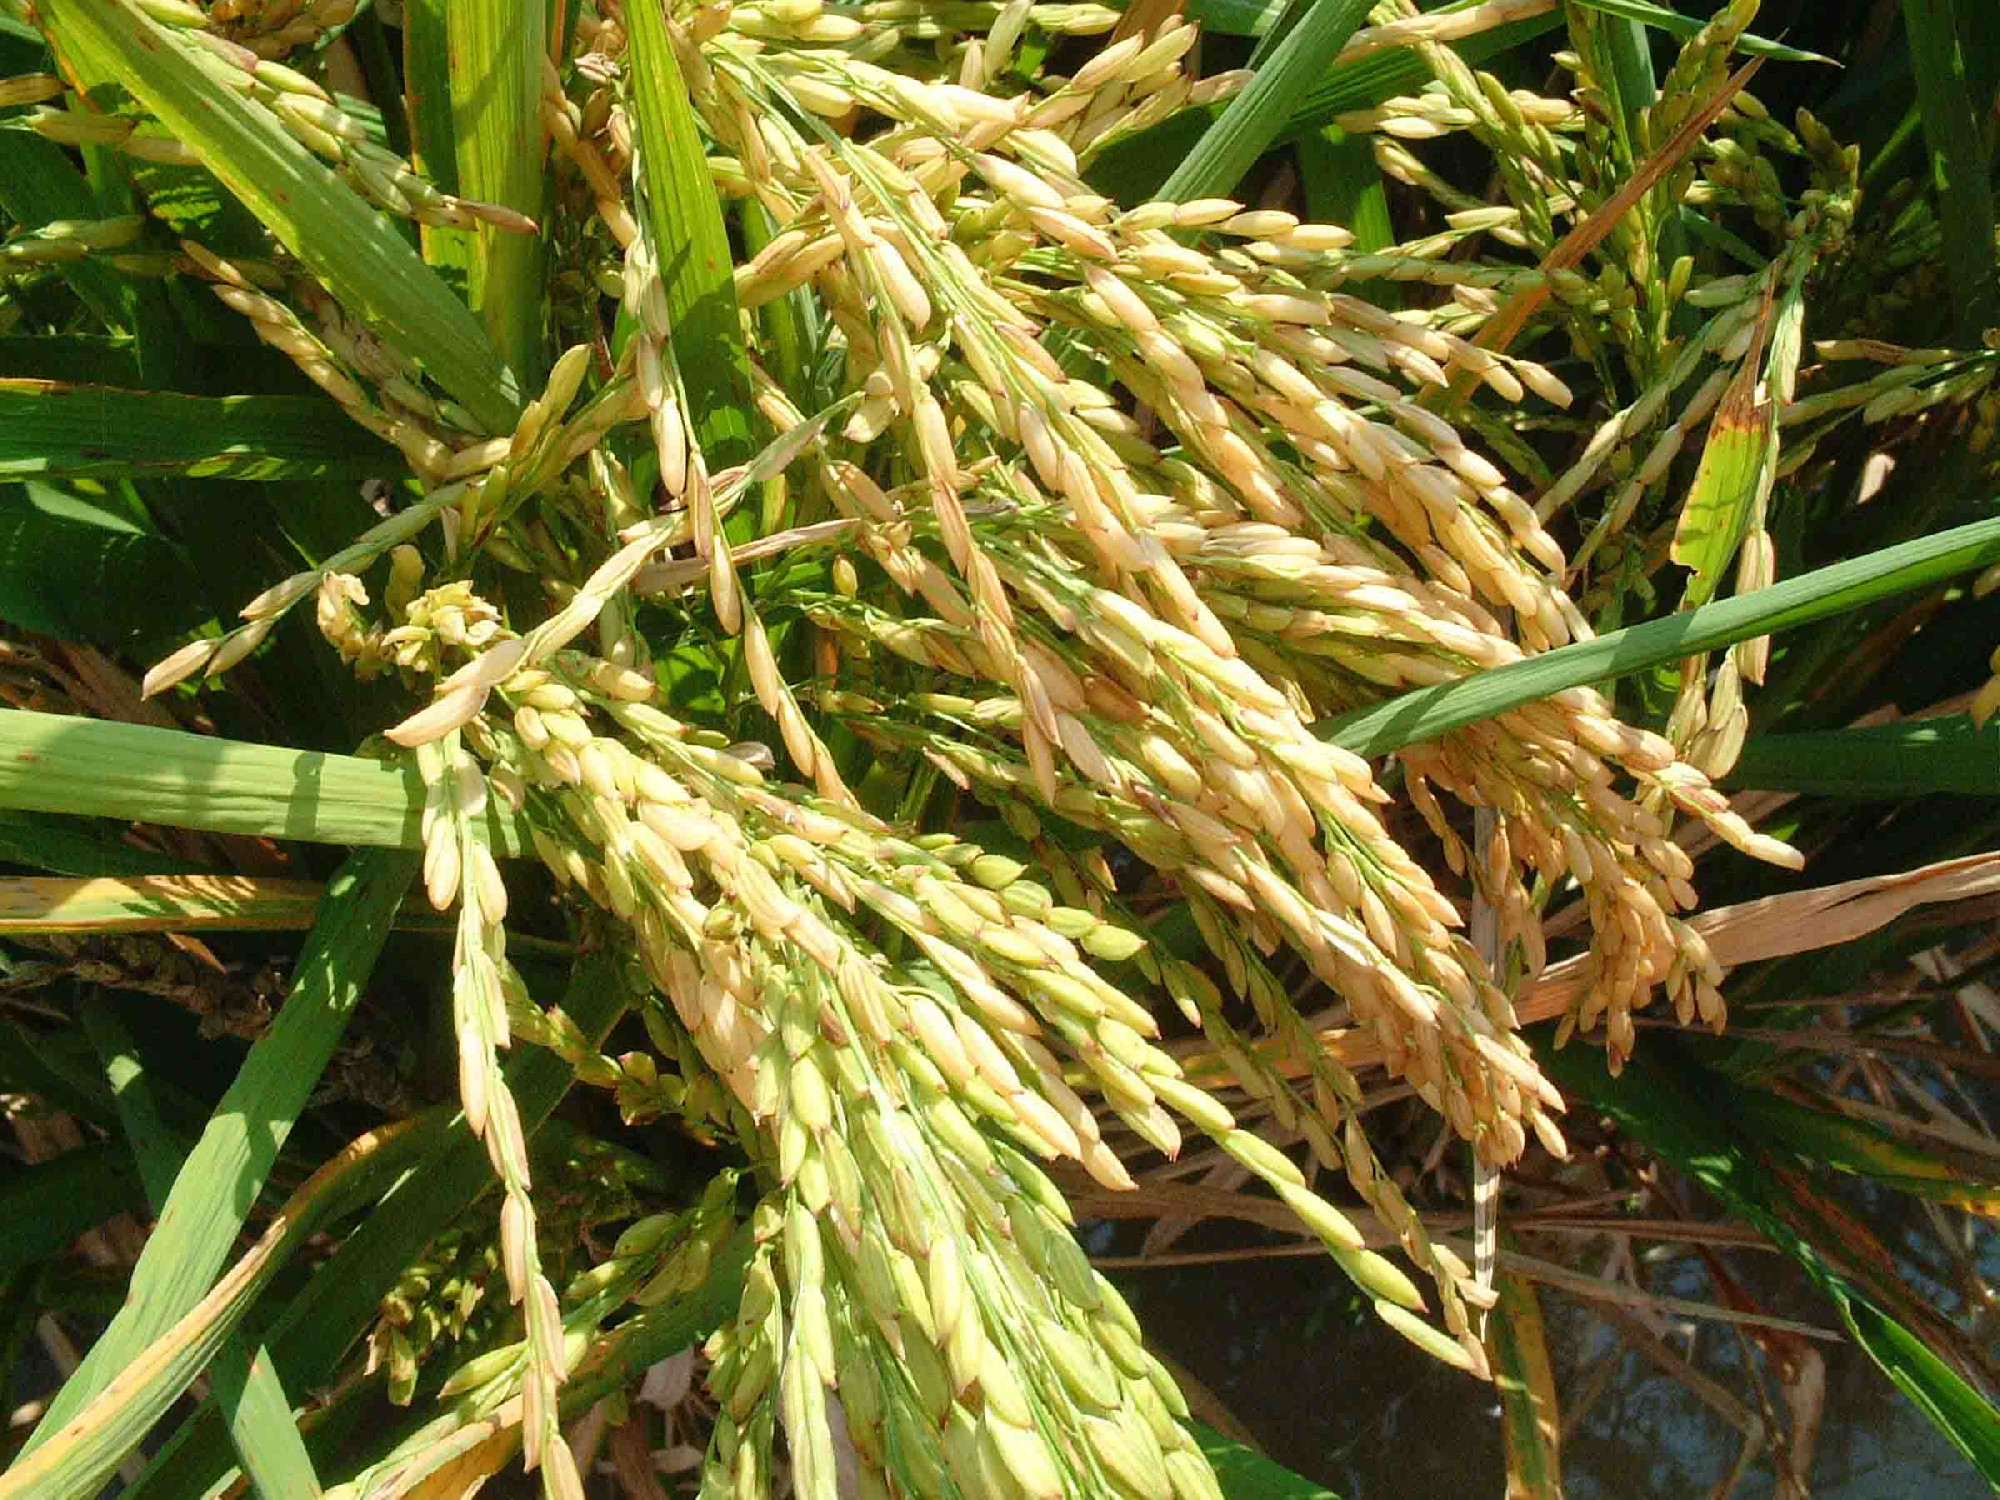 Betiltották a génmódosított rizs termesztését a Fülöp-szigeteken. És ez baj.